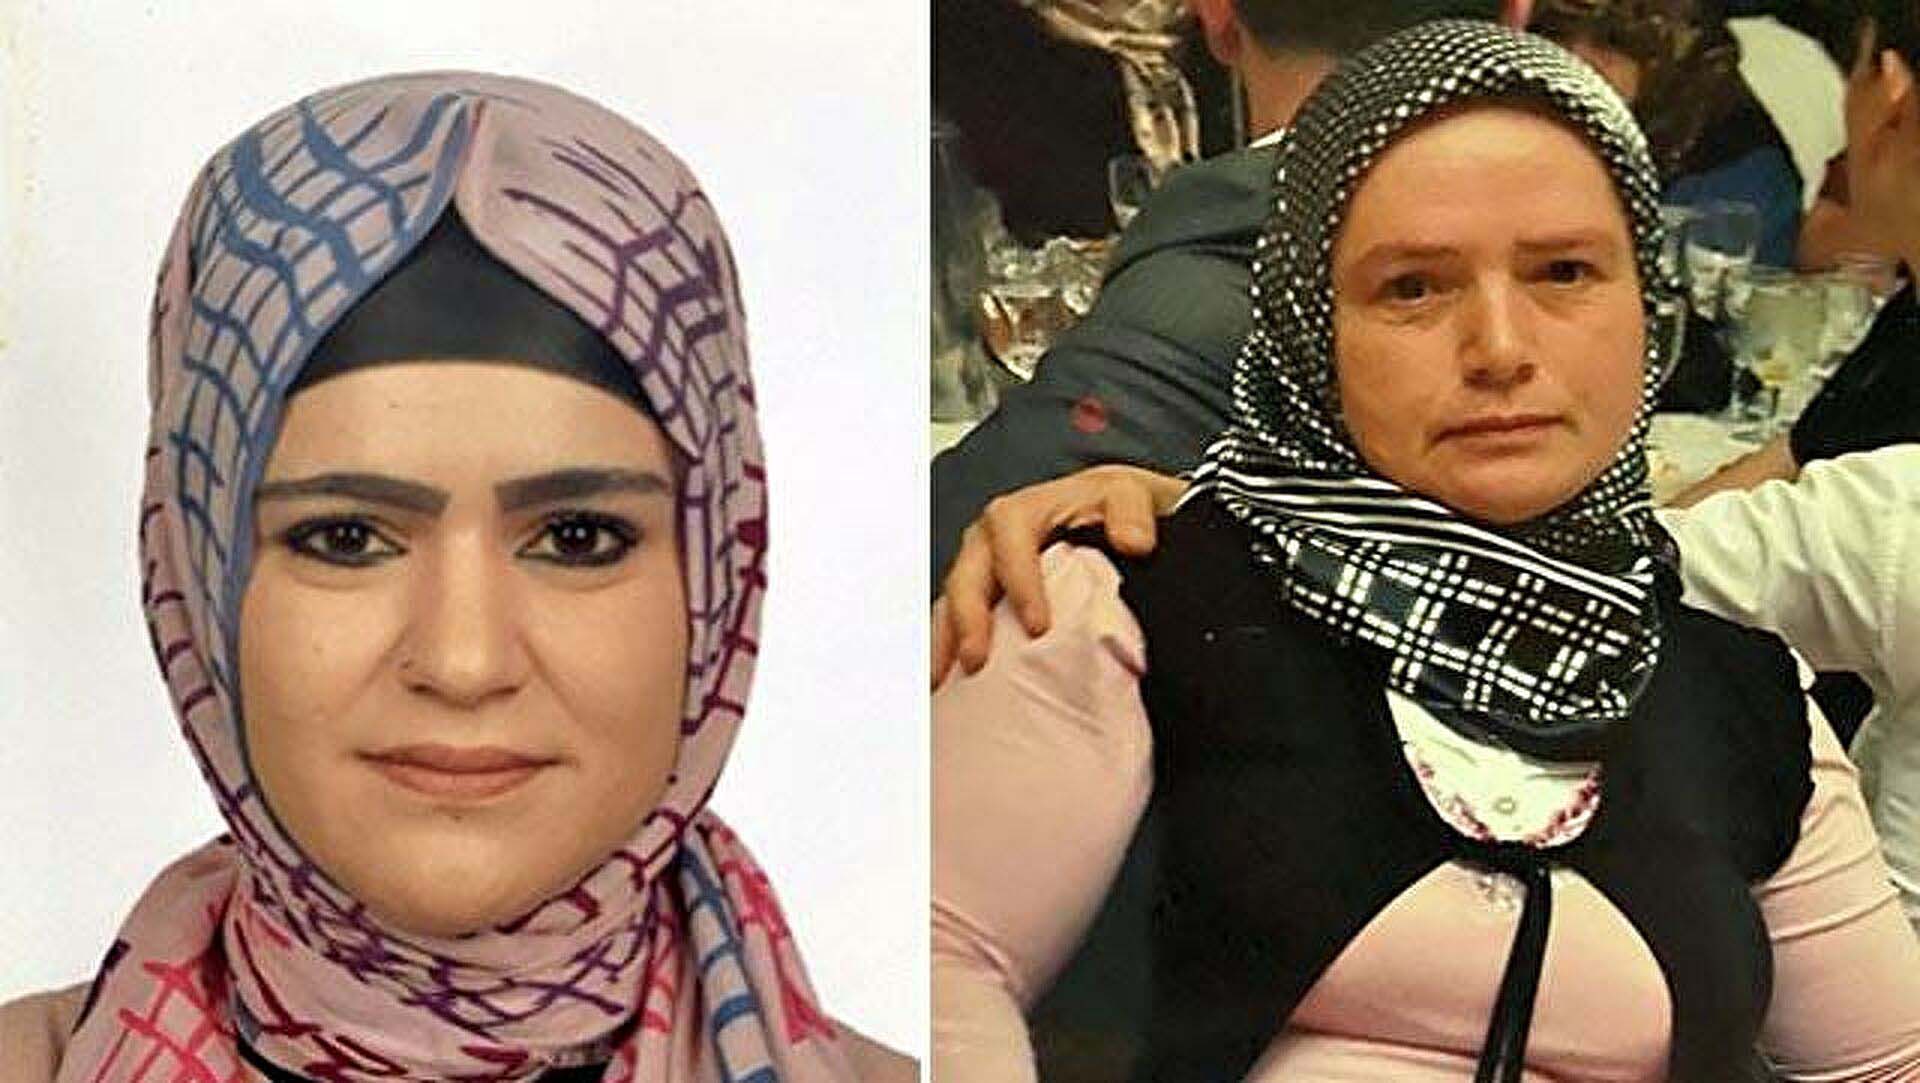 Cinci hocaya uydu, eşi Özge Nur Tekin'in sırtına oklava ile 100 kez vurdu, hacamat yaptırdı! Genç kadın hayatını kaybetti 